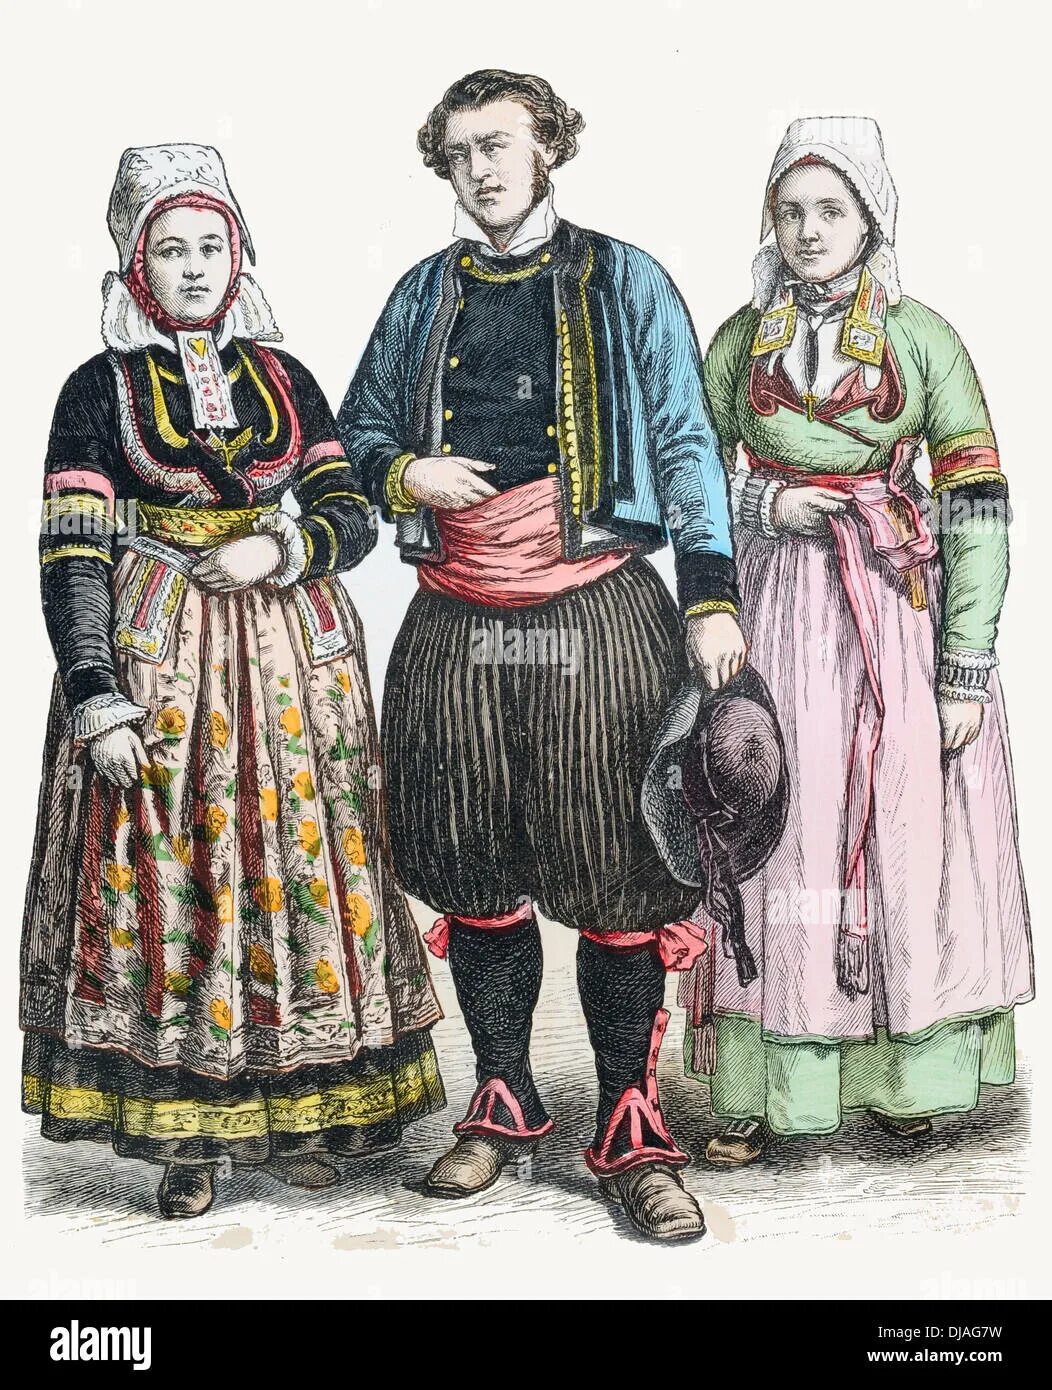 Одежда крестьян в 16 веке. Франция 16 век одежда крестьяне. Одежда крестьян Франции 19 века. Одежда простолюдинов в 19 веке. Одежда крестьян в 17 веке в Европе.